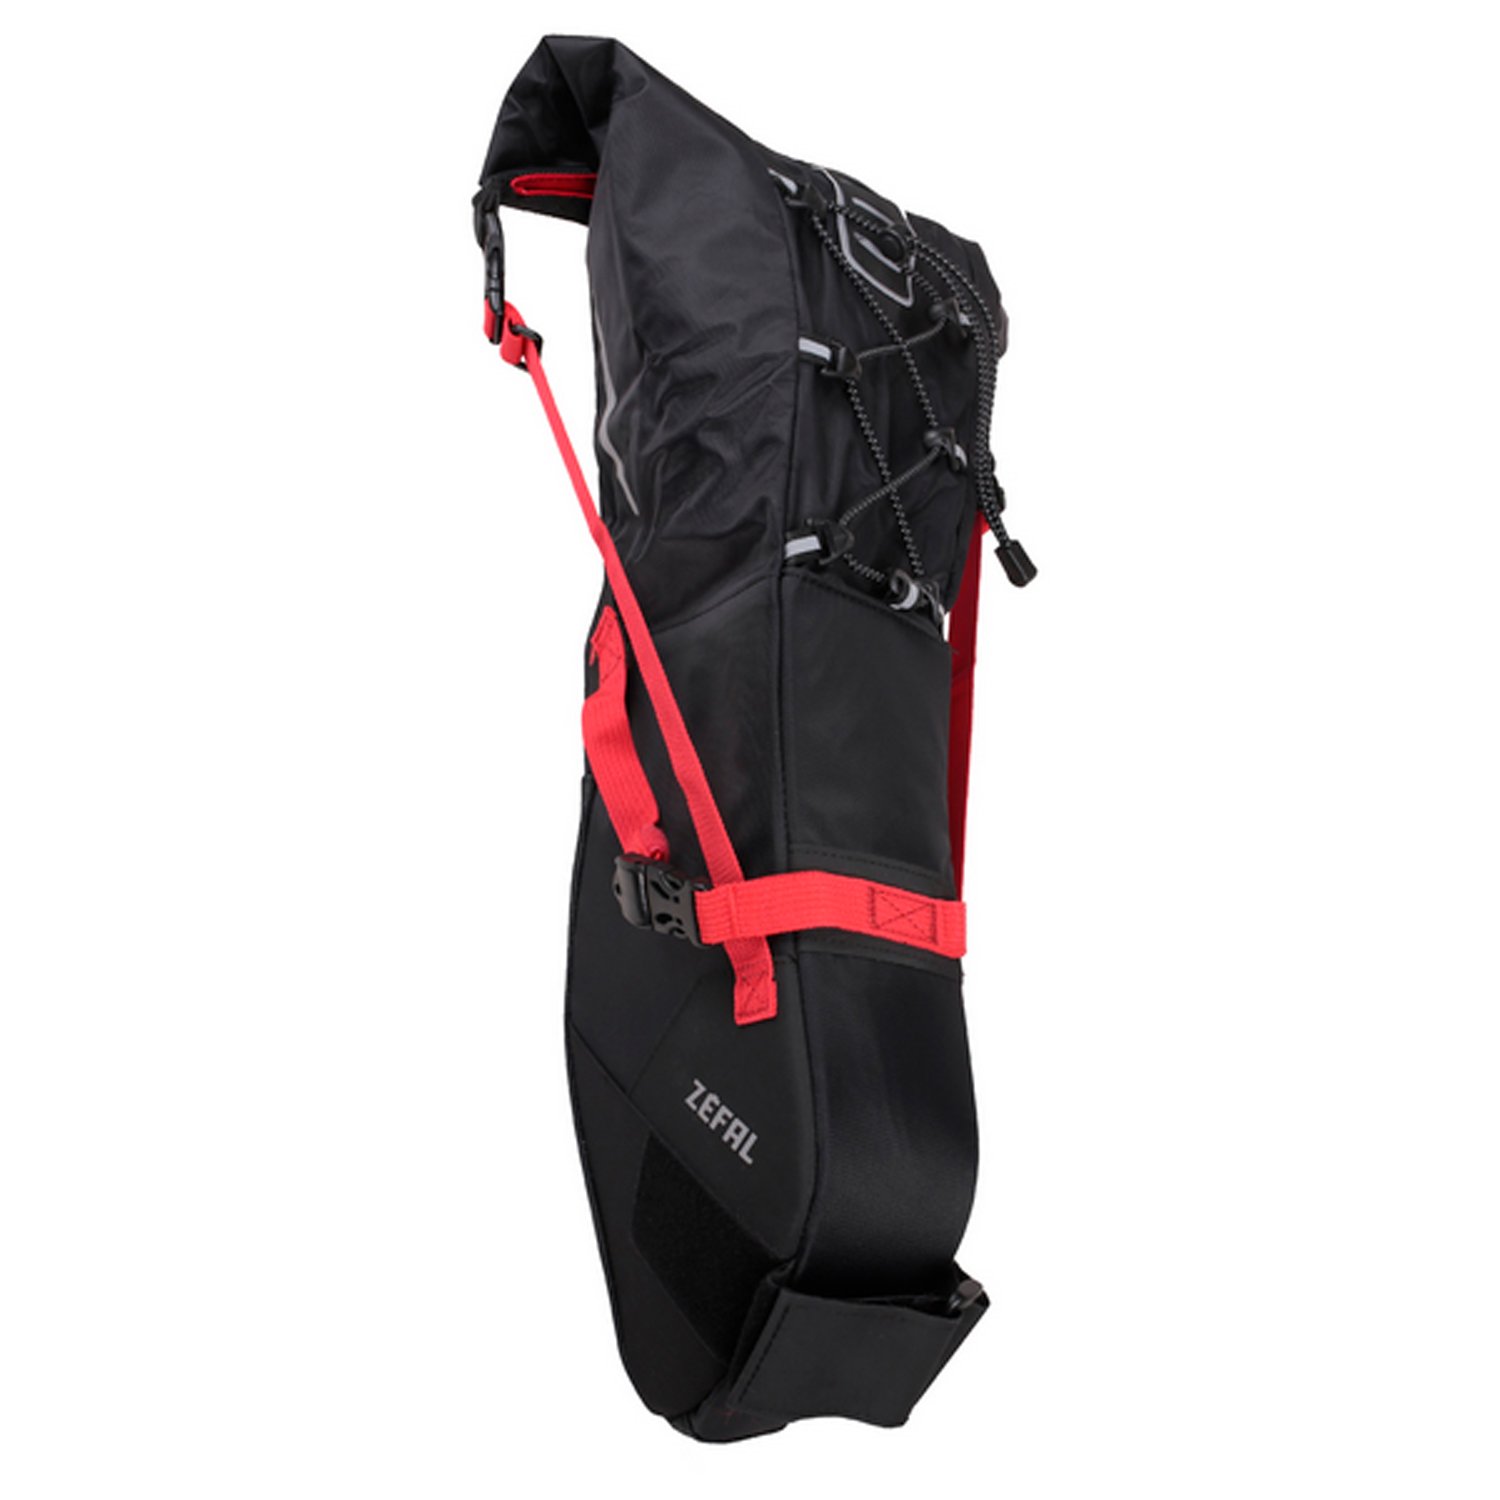 Сумка велосипедная Zefal Z Adventure R11 Saddle Bag, подседельная, объем от 5 до 11L, красный/черный, 2023, 7001 сумка велосипедная zefal iron pack 2 m tf saddle bag подседельная 0 9l 7024